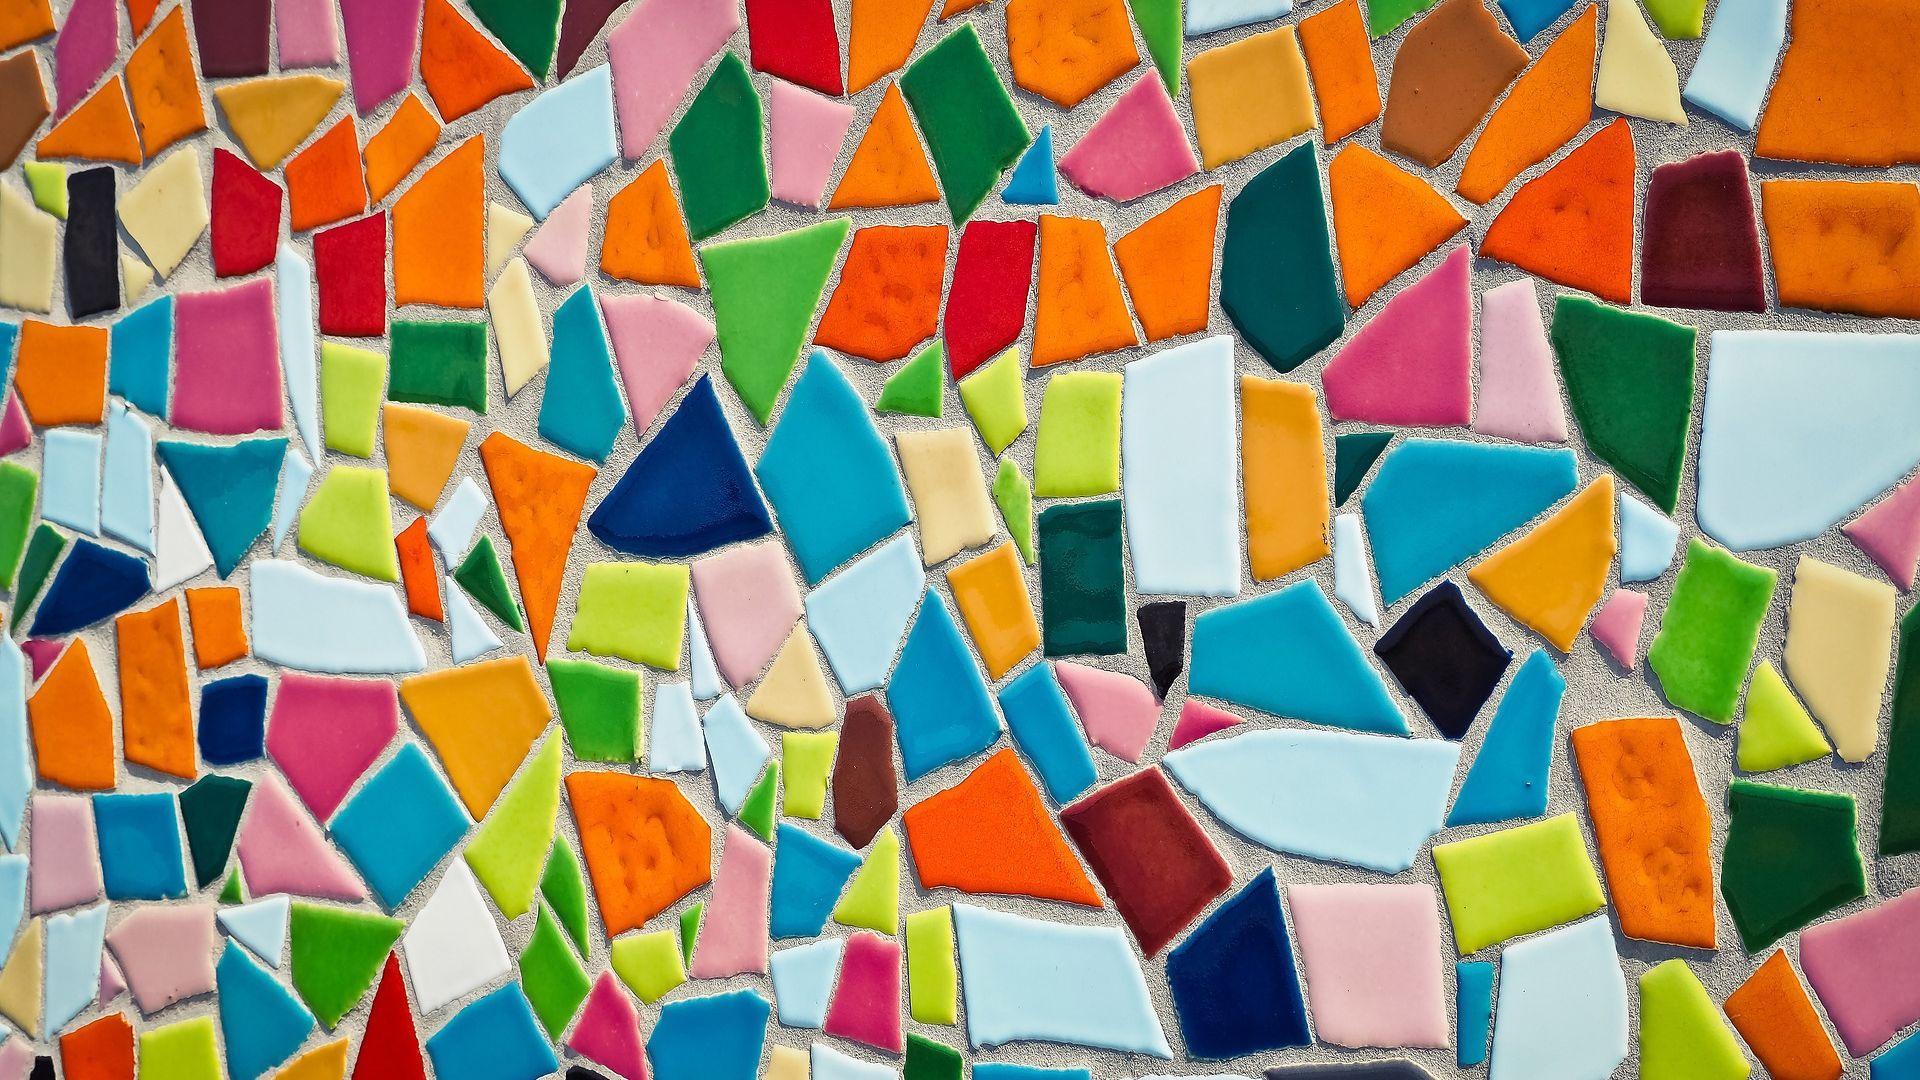 Abstract Art Mosaic Tiles Pattern Wallpaper